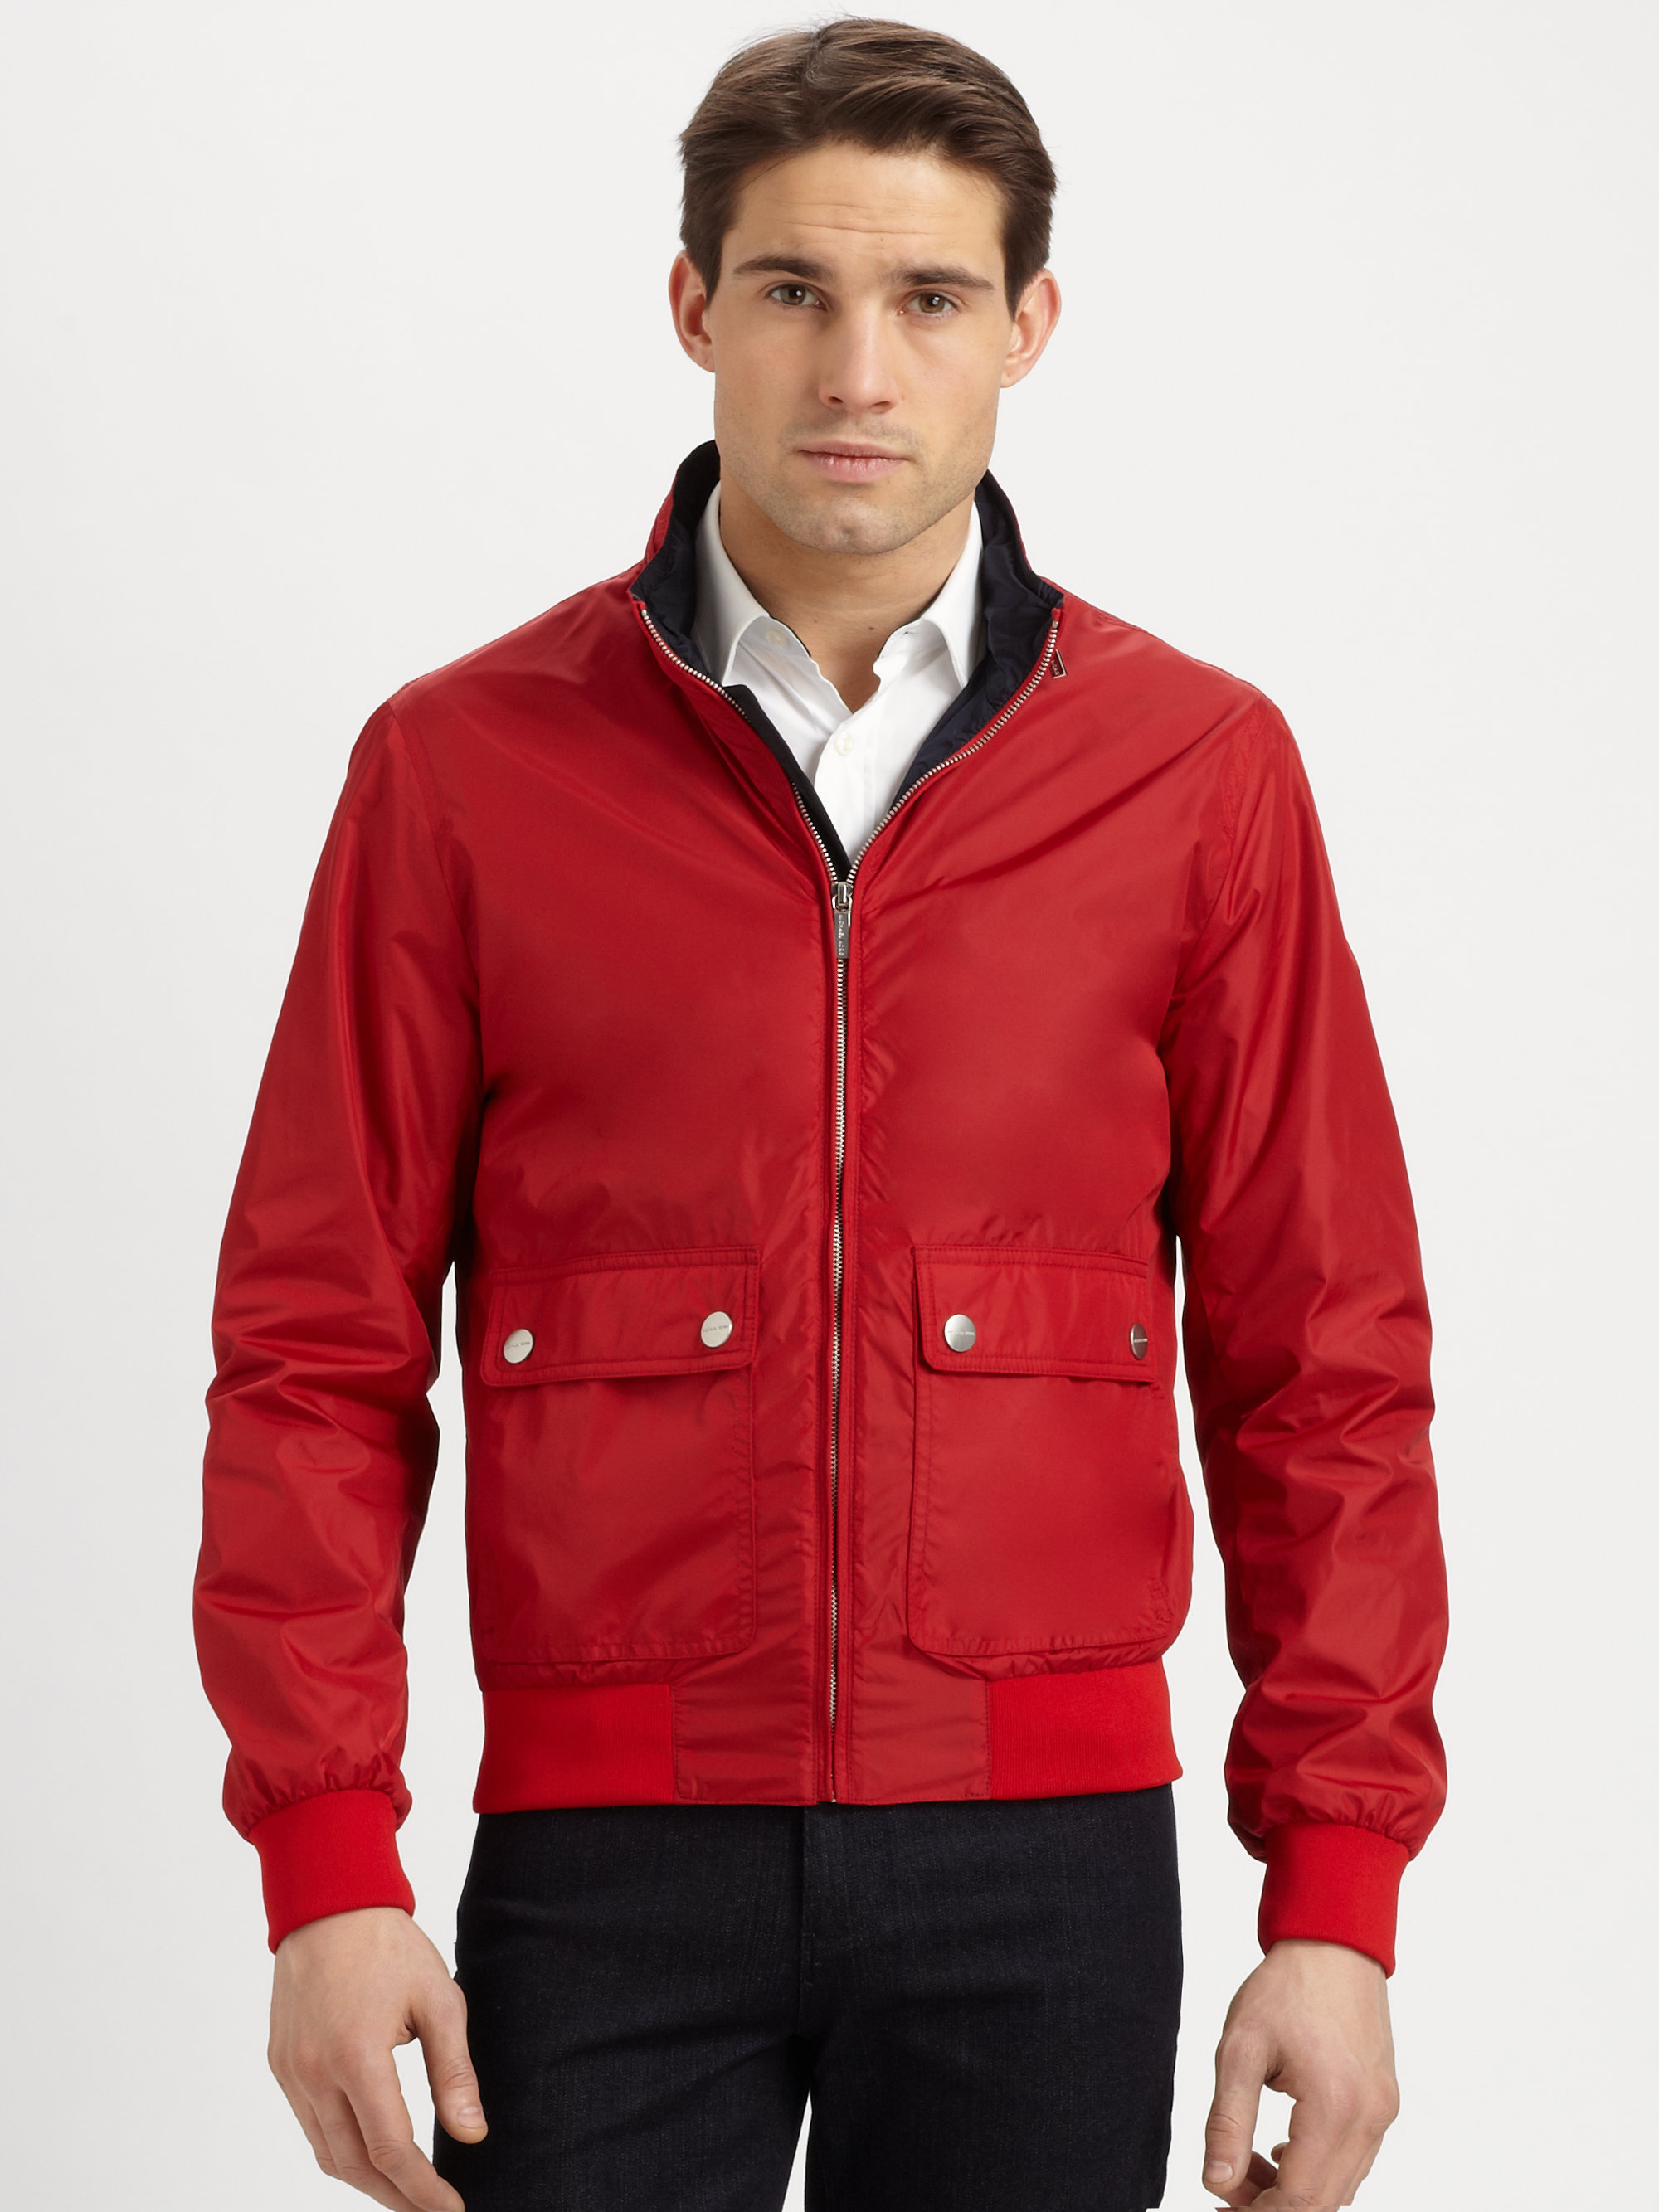 Lyst - Michael Kors Nylon Bomber Jacket in Red for Men